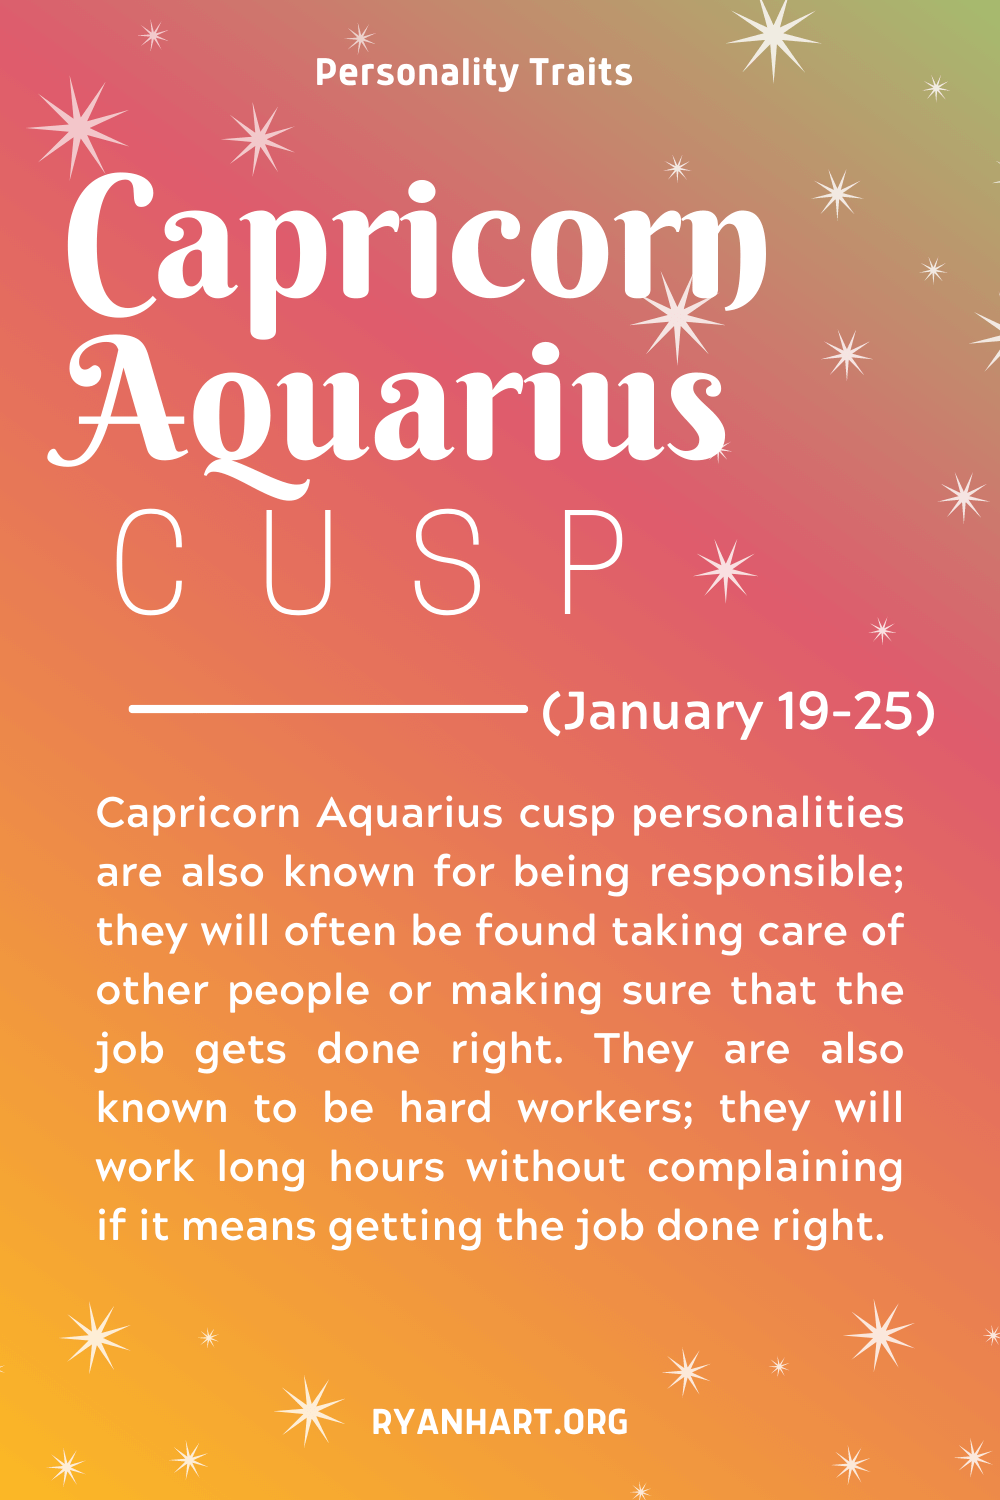  Trets de personalitat de la cúspide de l'Aquari Capricorn